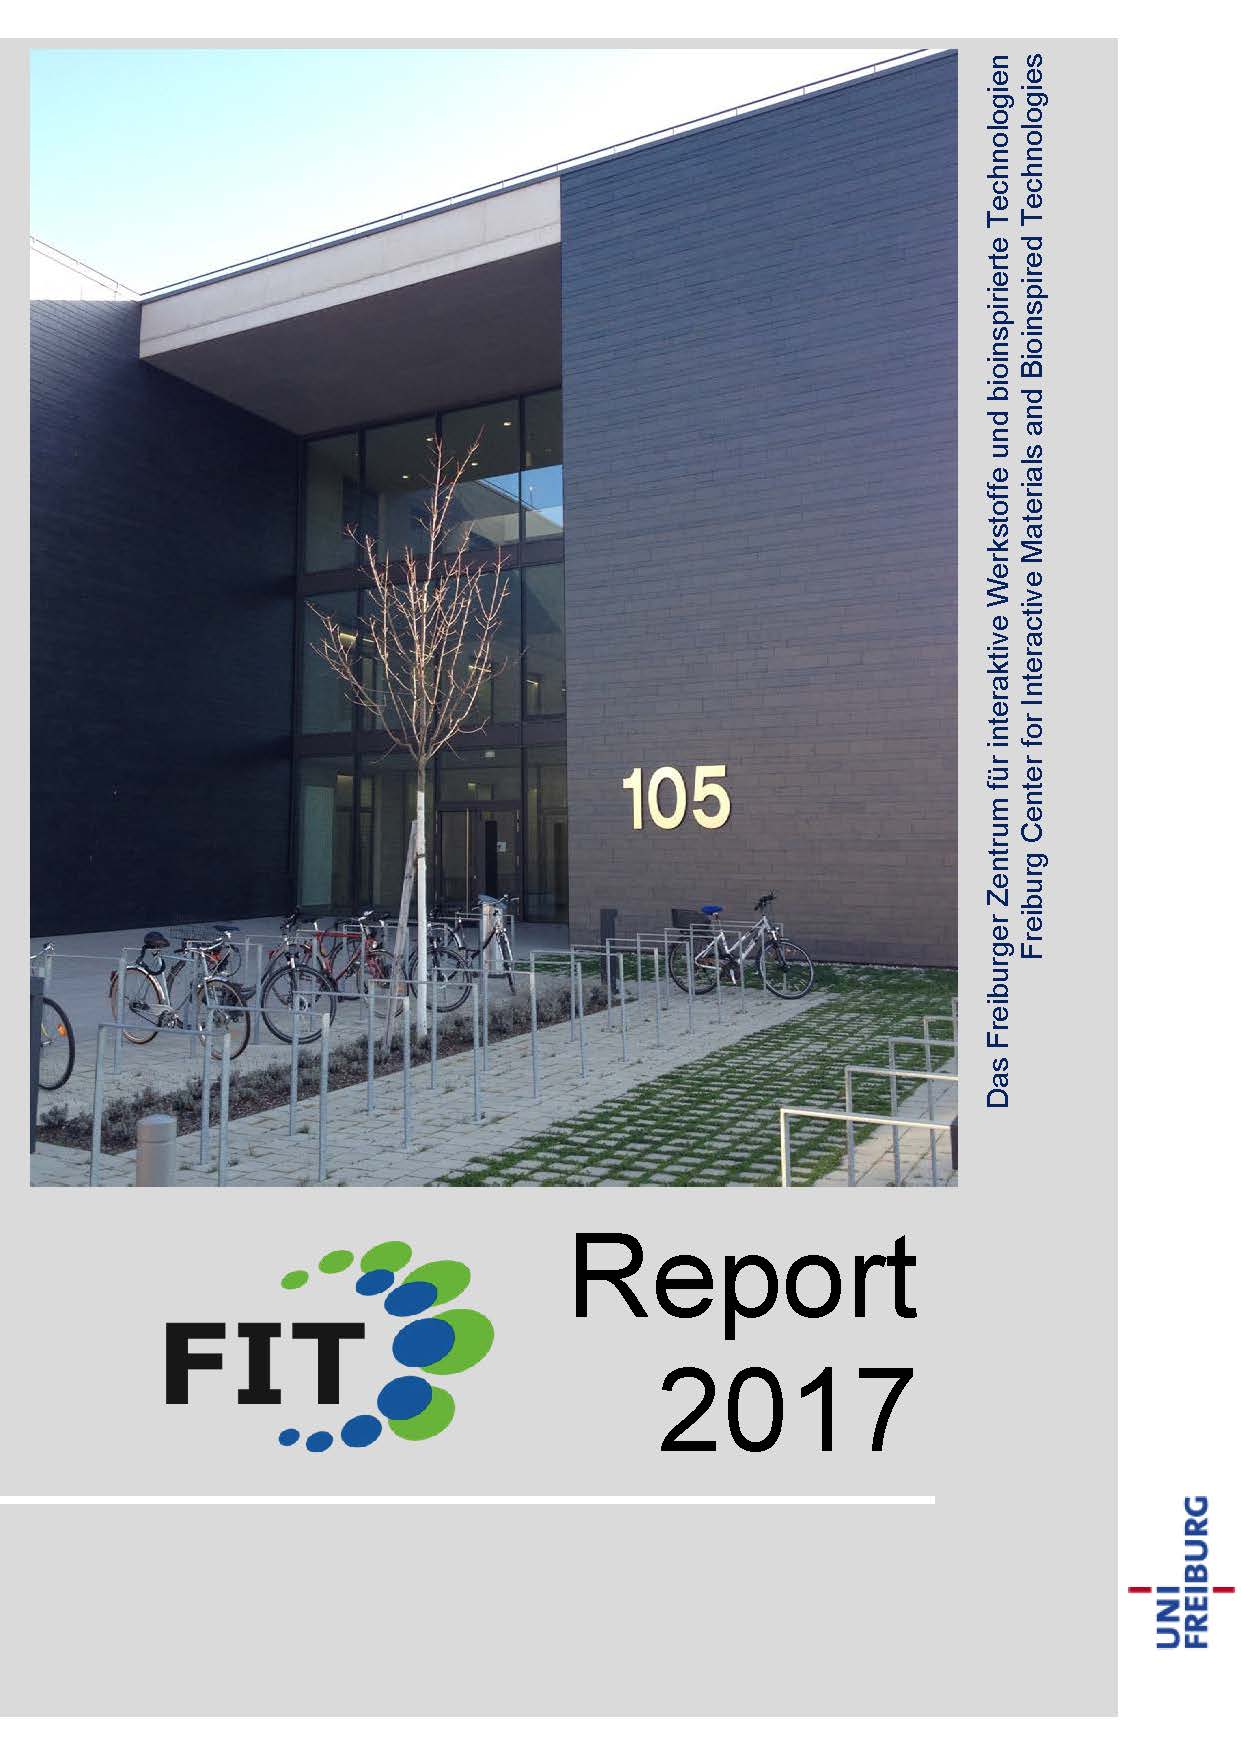 FIT-Report 2017 Deckblatt